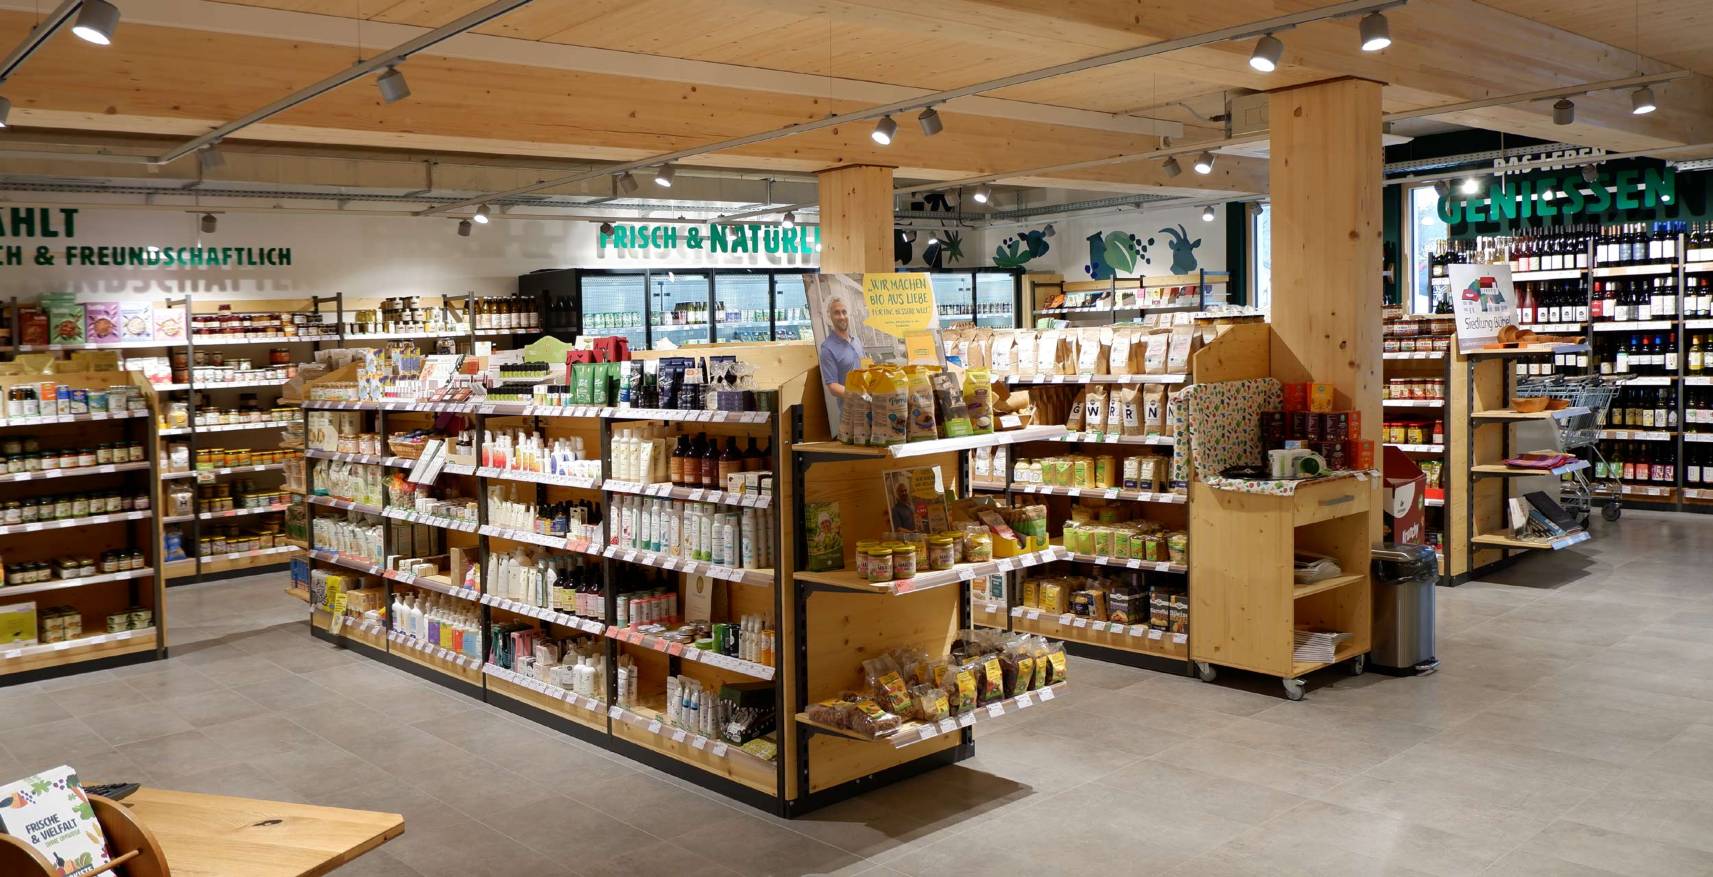 Eine Ladeneinrichtung für einen Bioladen in Wiesenfelden, das erledigt die Firma Mobili planen + einrichten aus Neu-Ulm